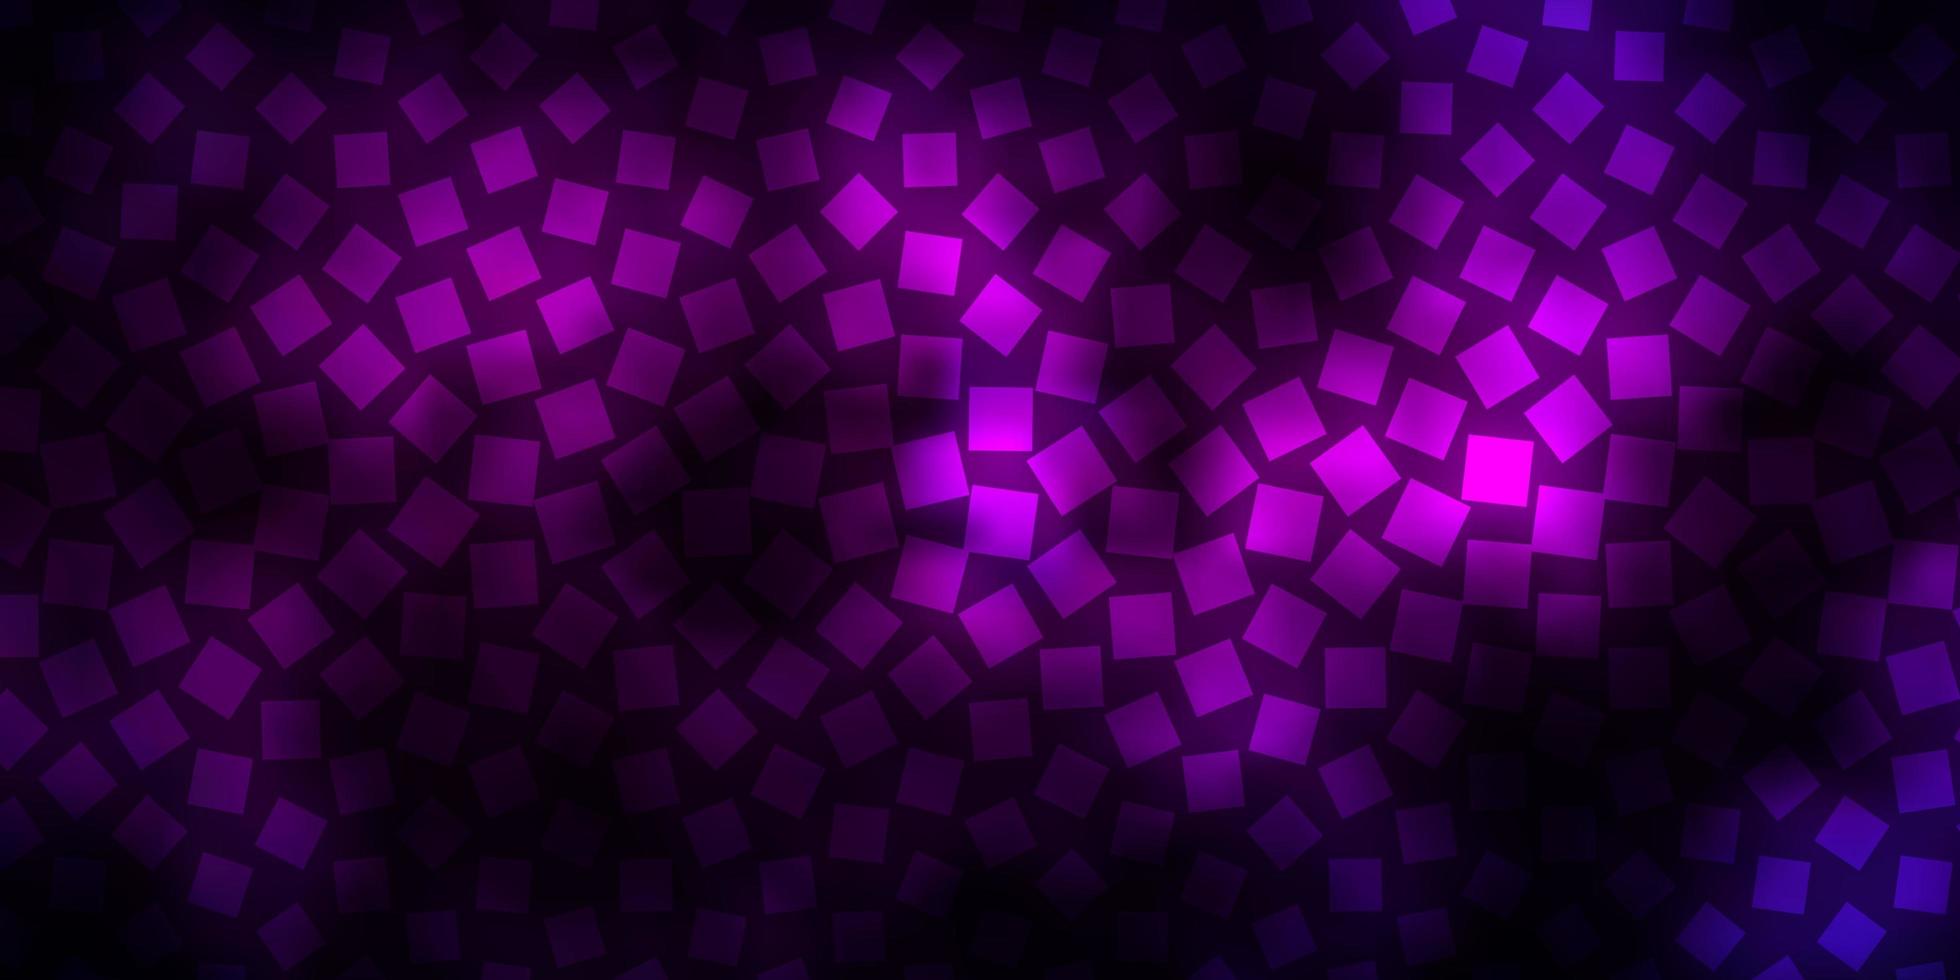 donker roze blauw vector patroon in vierkante stijl nieuwe abstracte illustratie met rechthoekige vormen sjabloon voor mobiele telefoons